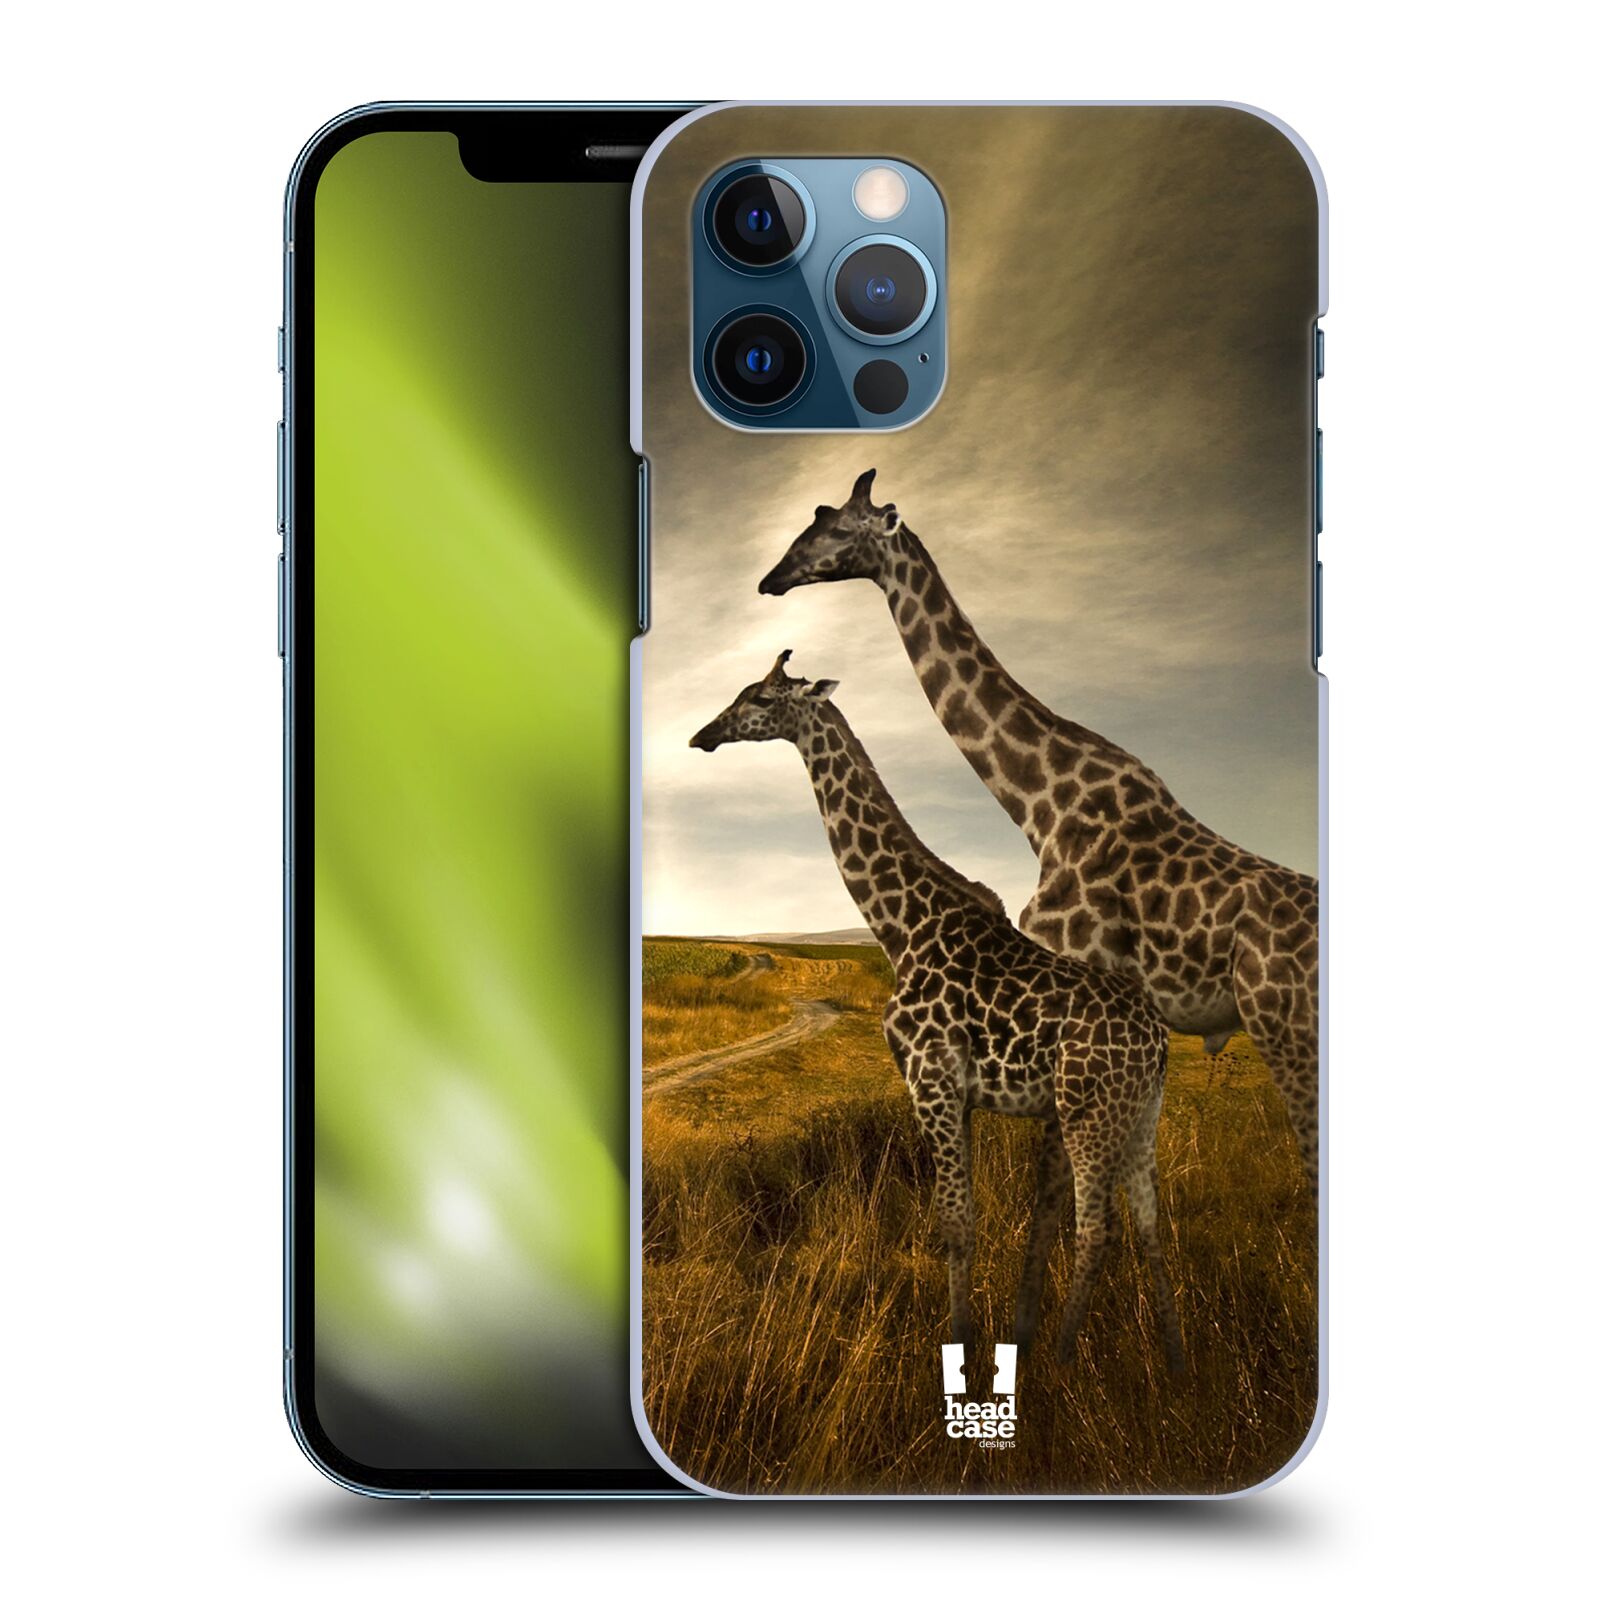 Zadní obal pro mobil Apple iPhone 12 / iPhone 12 Pro - HEAD CASE - Svět zvířat žirafy